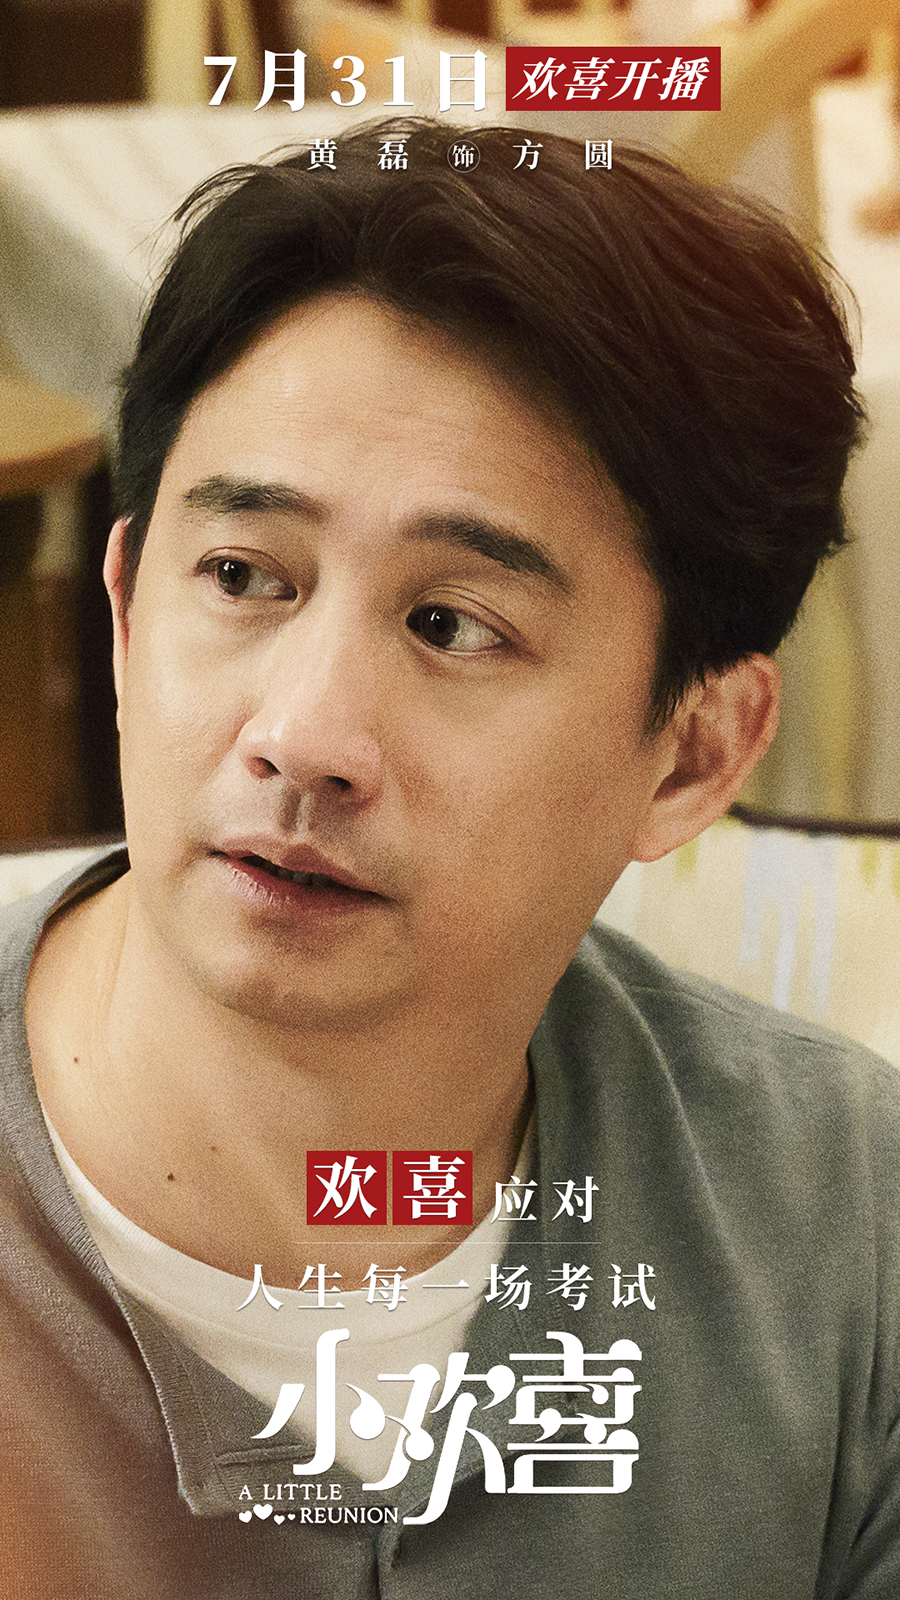 《小欢喜》黄磊海清领衔演绎中国式家庭喜怒哀乐